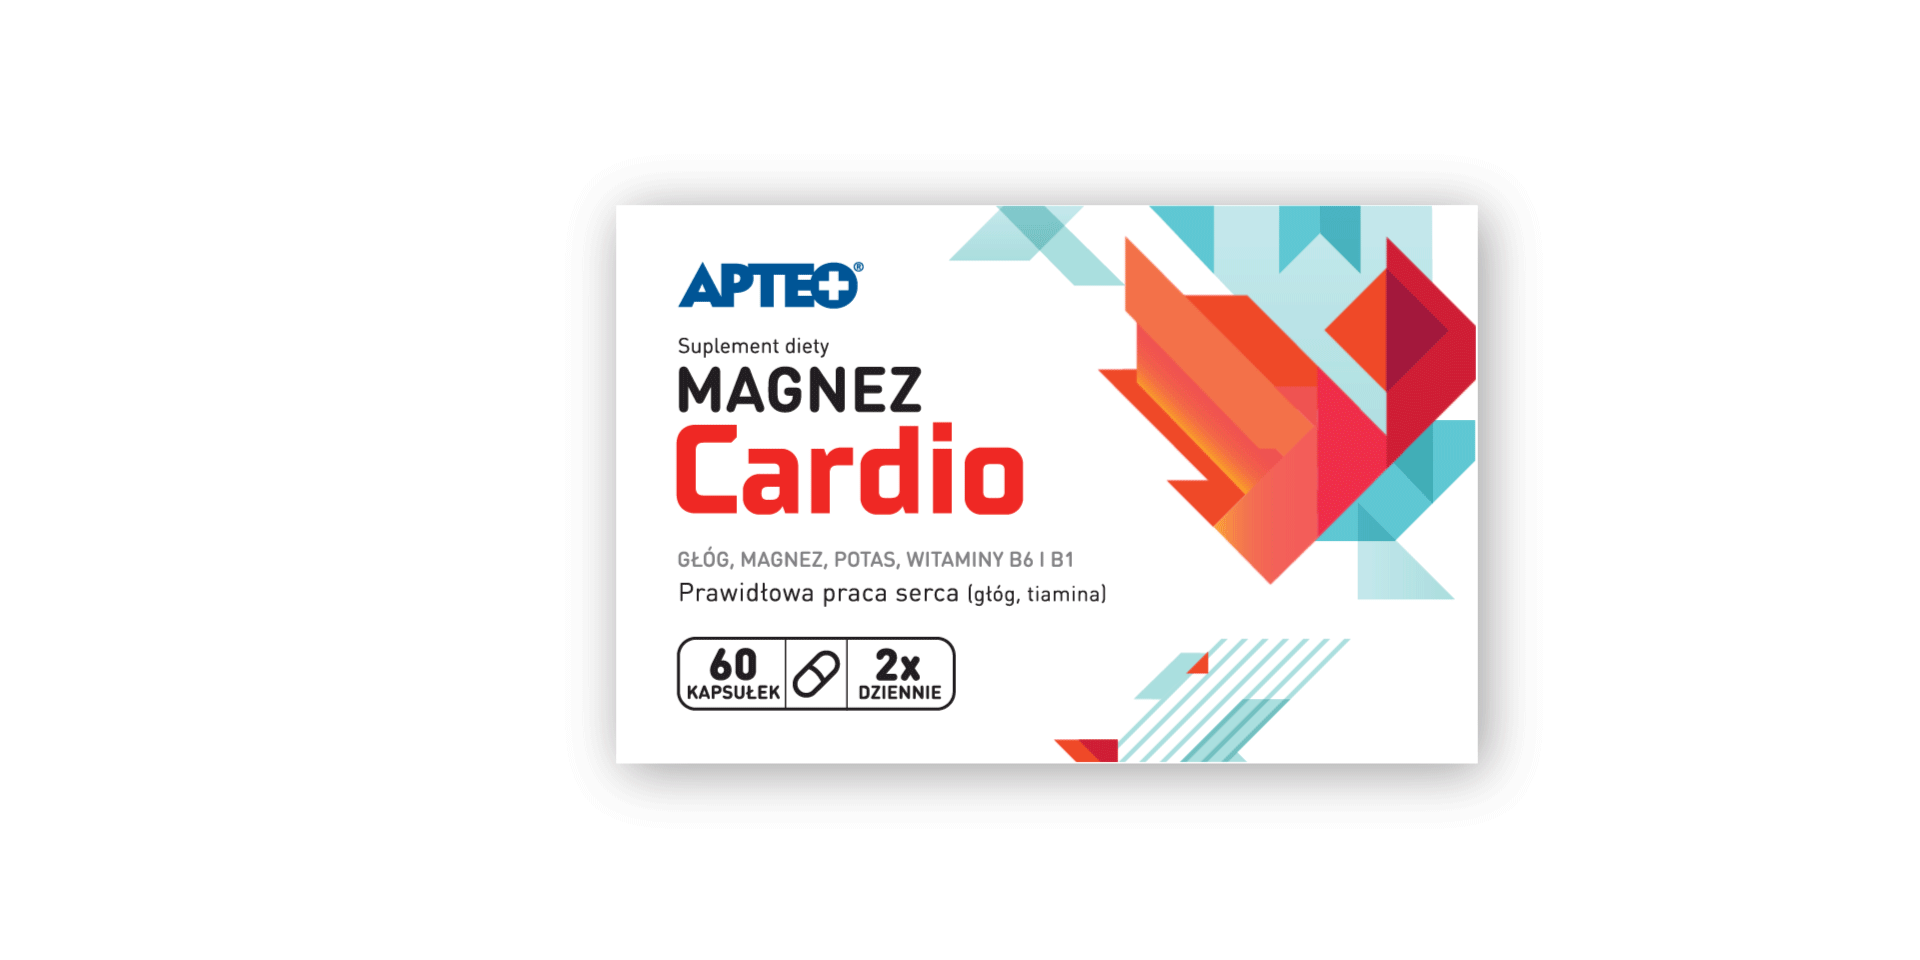 Opakowanie magnez Cardio - Redesign opakowań Apteo